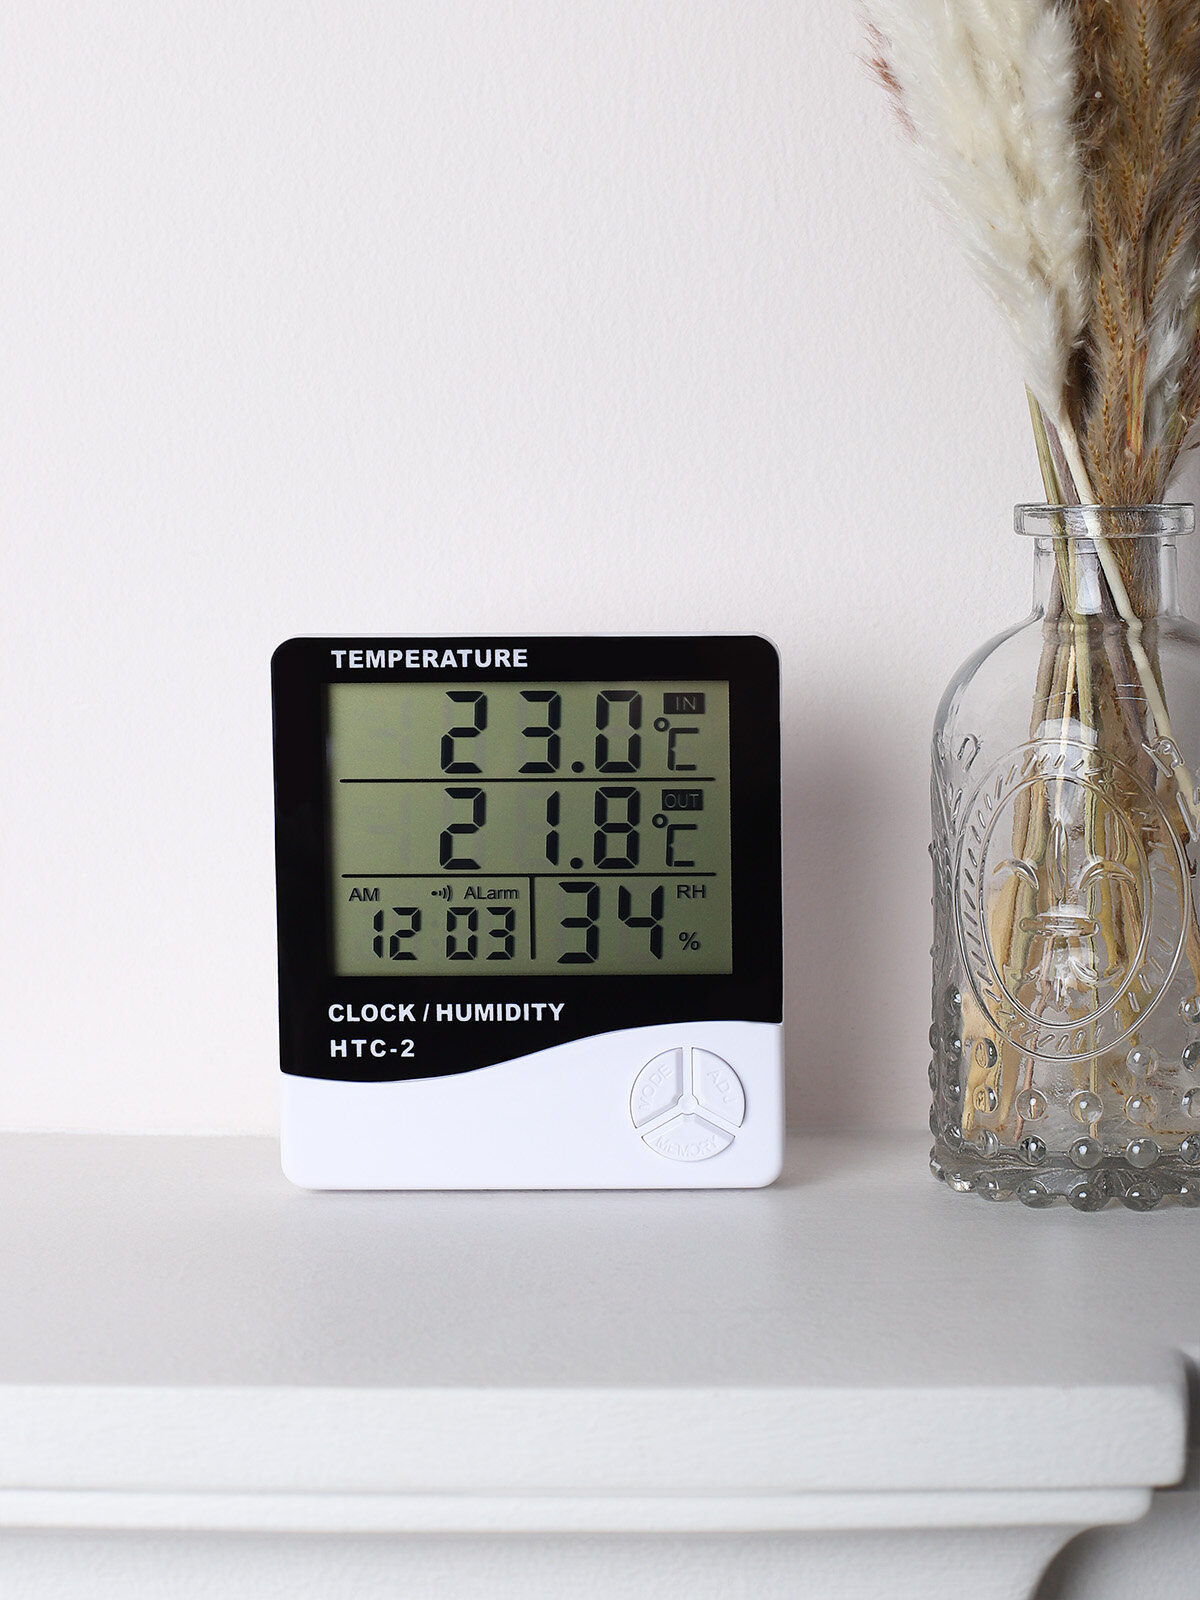 Электронная метеостанция термометр HTC-2 измерение температуры дома и на улице +электронные часы-будильник + определение влажности воздуха